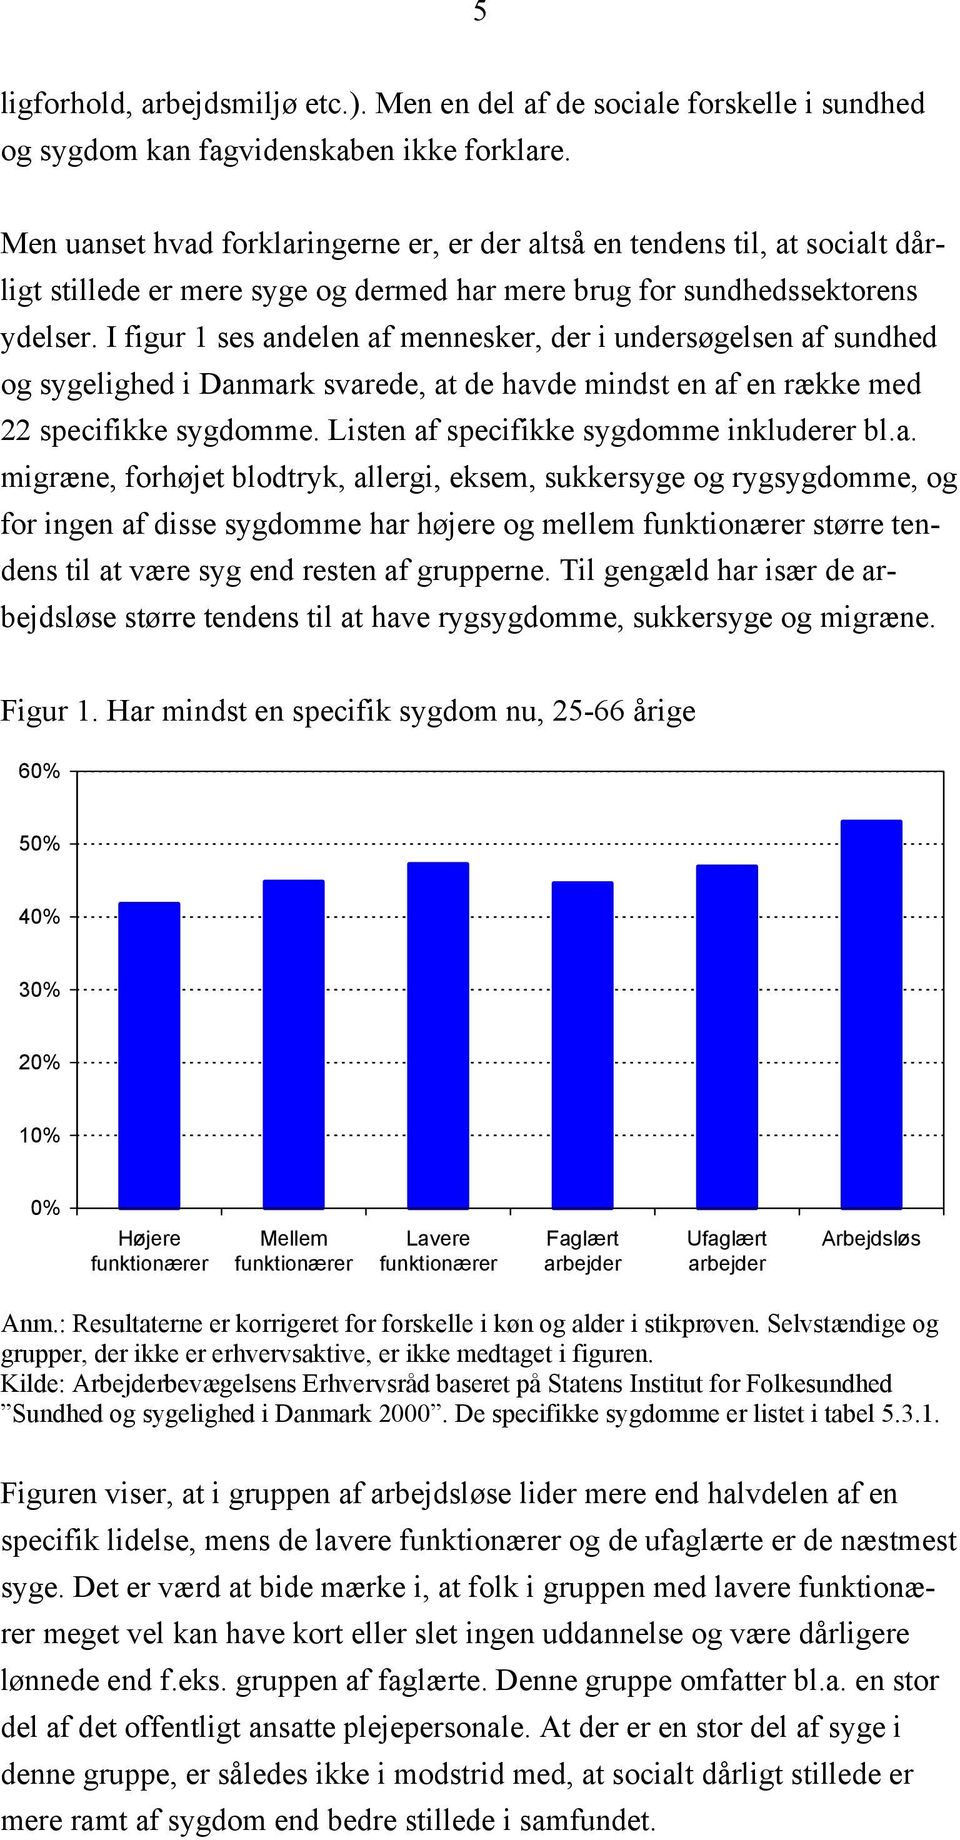 I figur 1 ses andelen af mennesker, der i undersøgelsen af sundhed og sygelighed i Danmark svarede, at de havde mindst en af en række med 22 specifikke sygdomme.